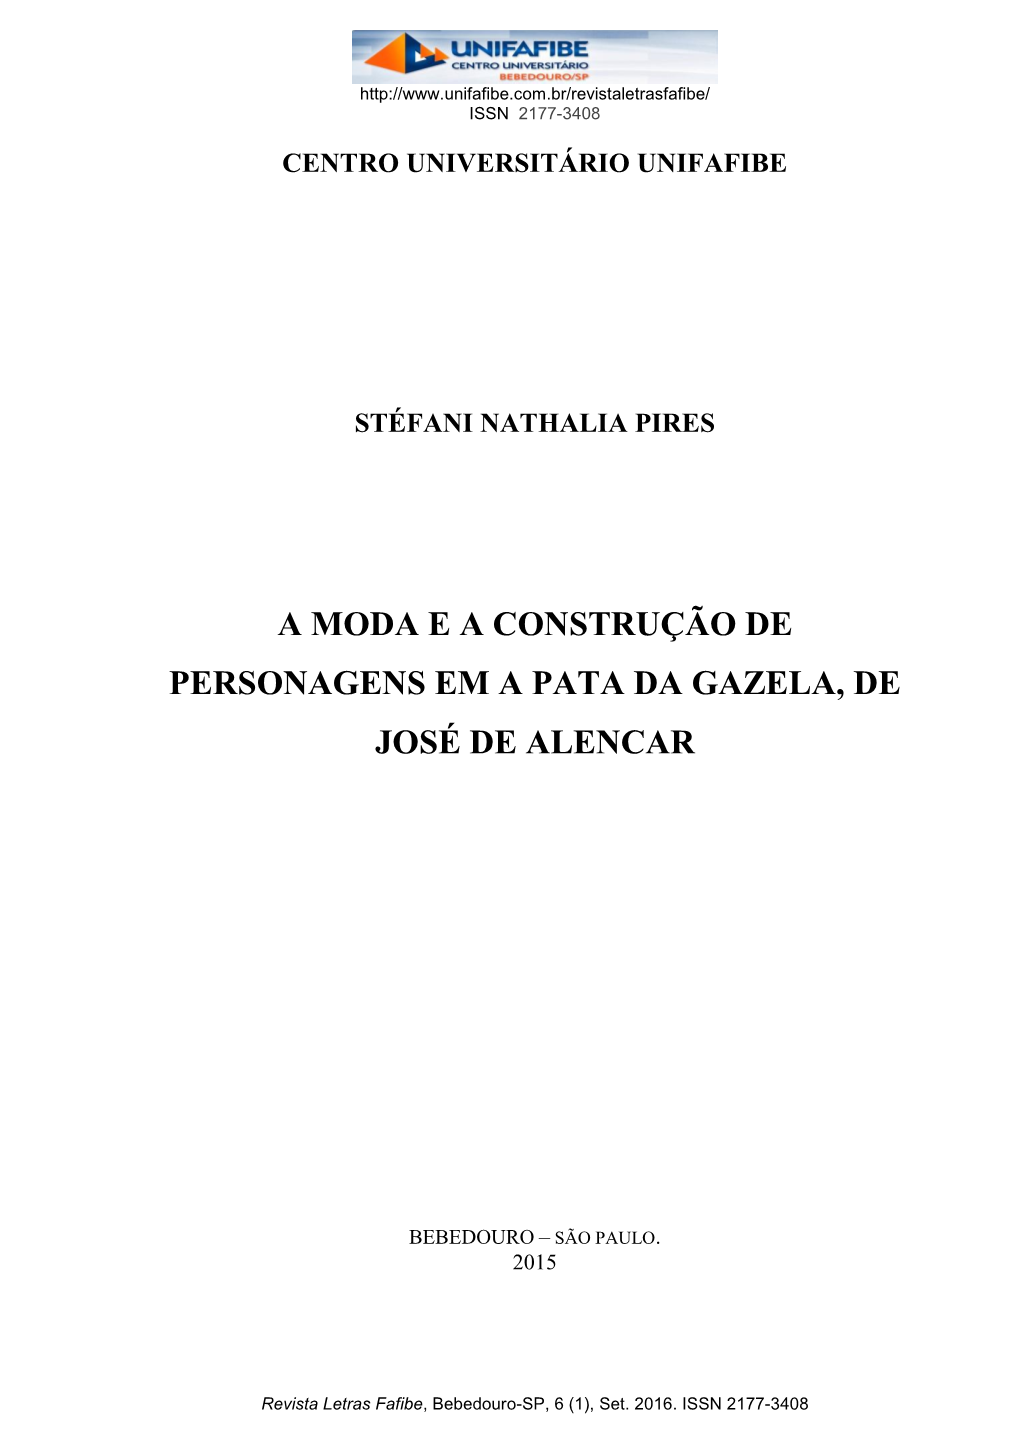 A Moda E a Construção De Personagens Em a Pata Da Gazela, De José De Alencar